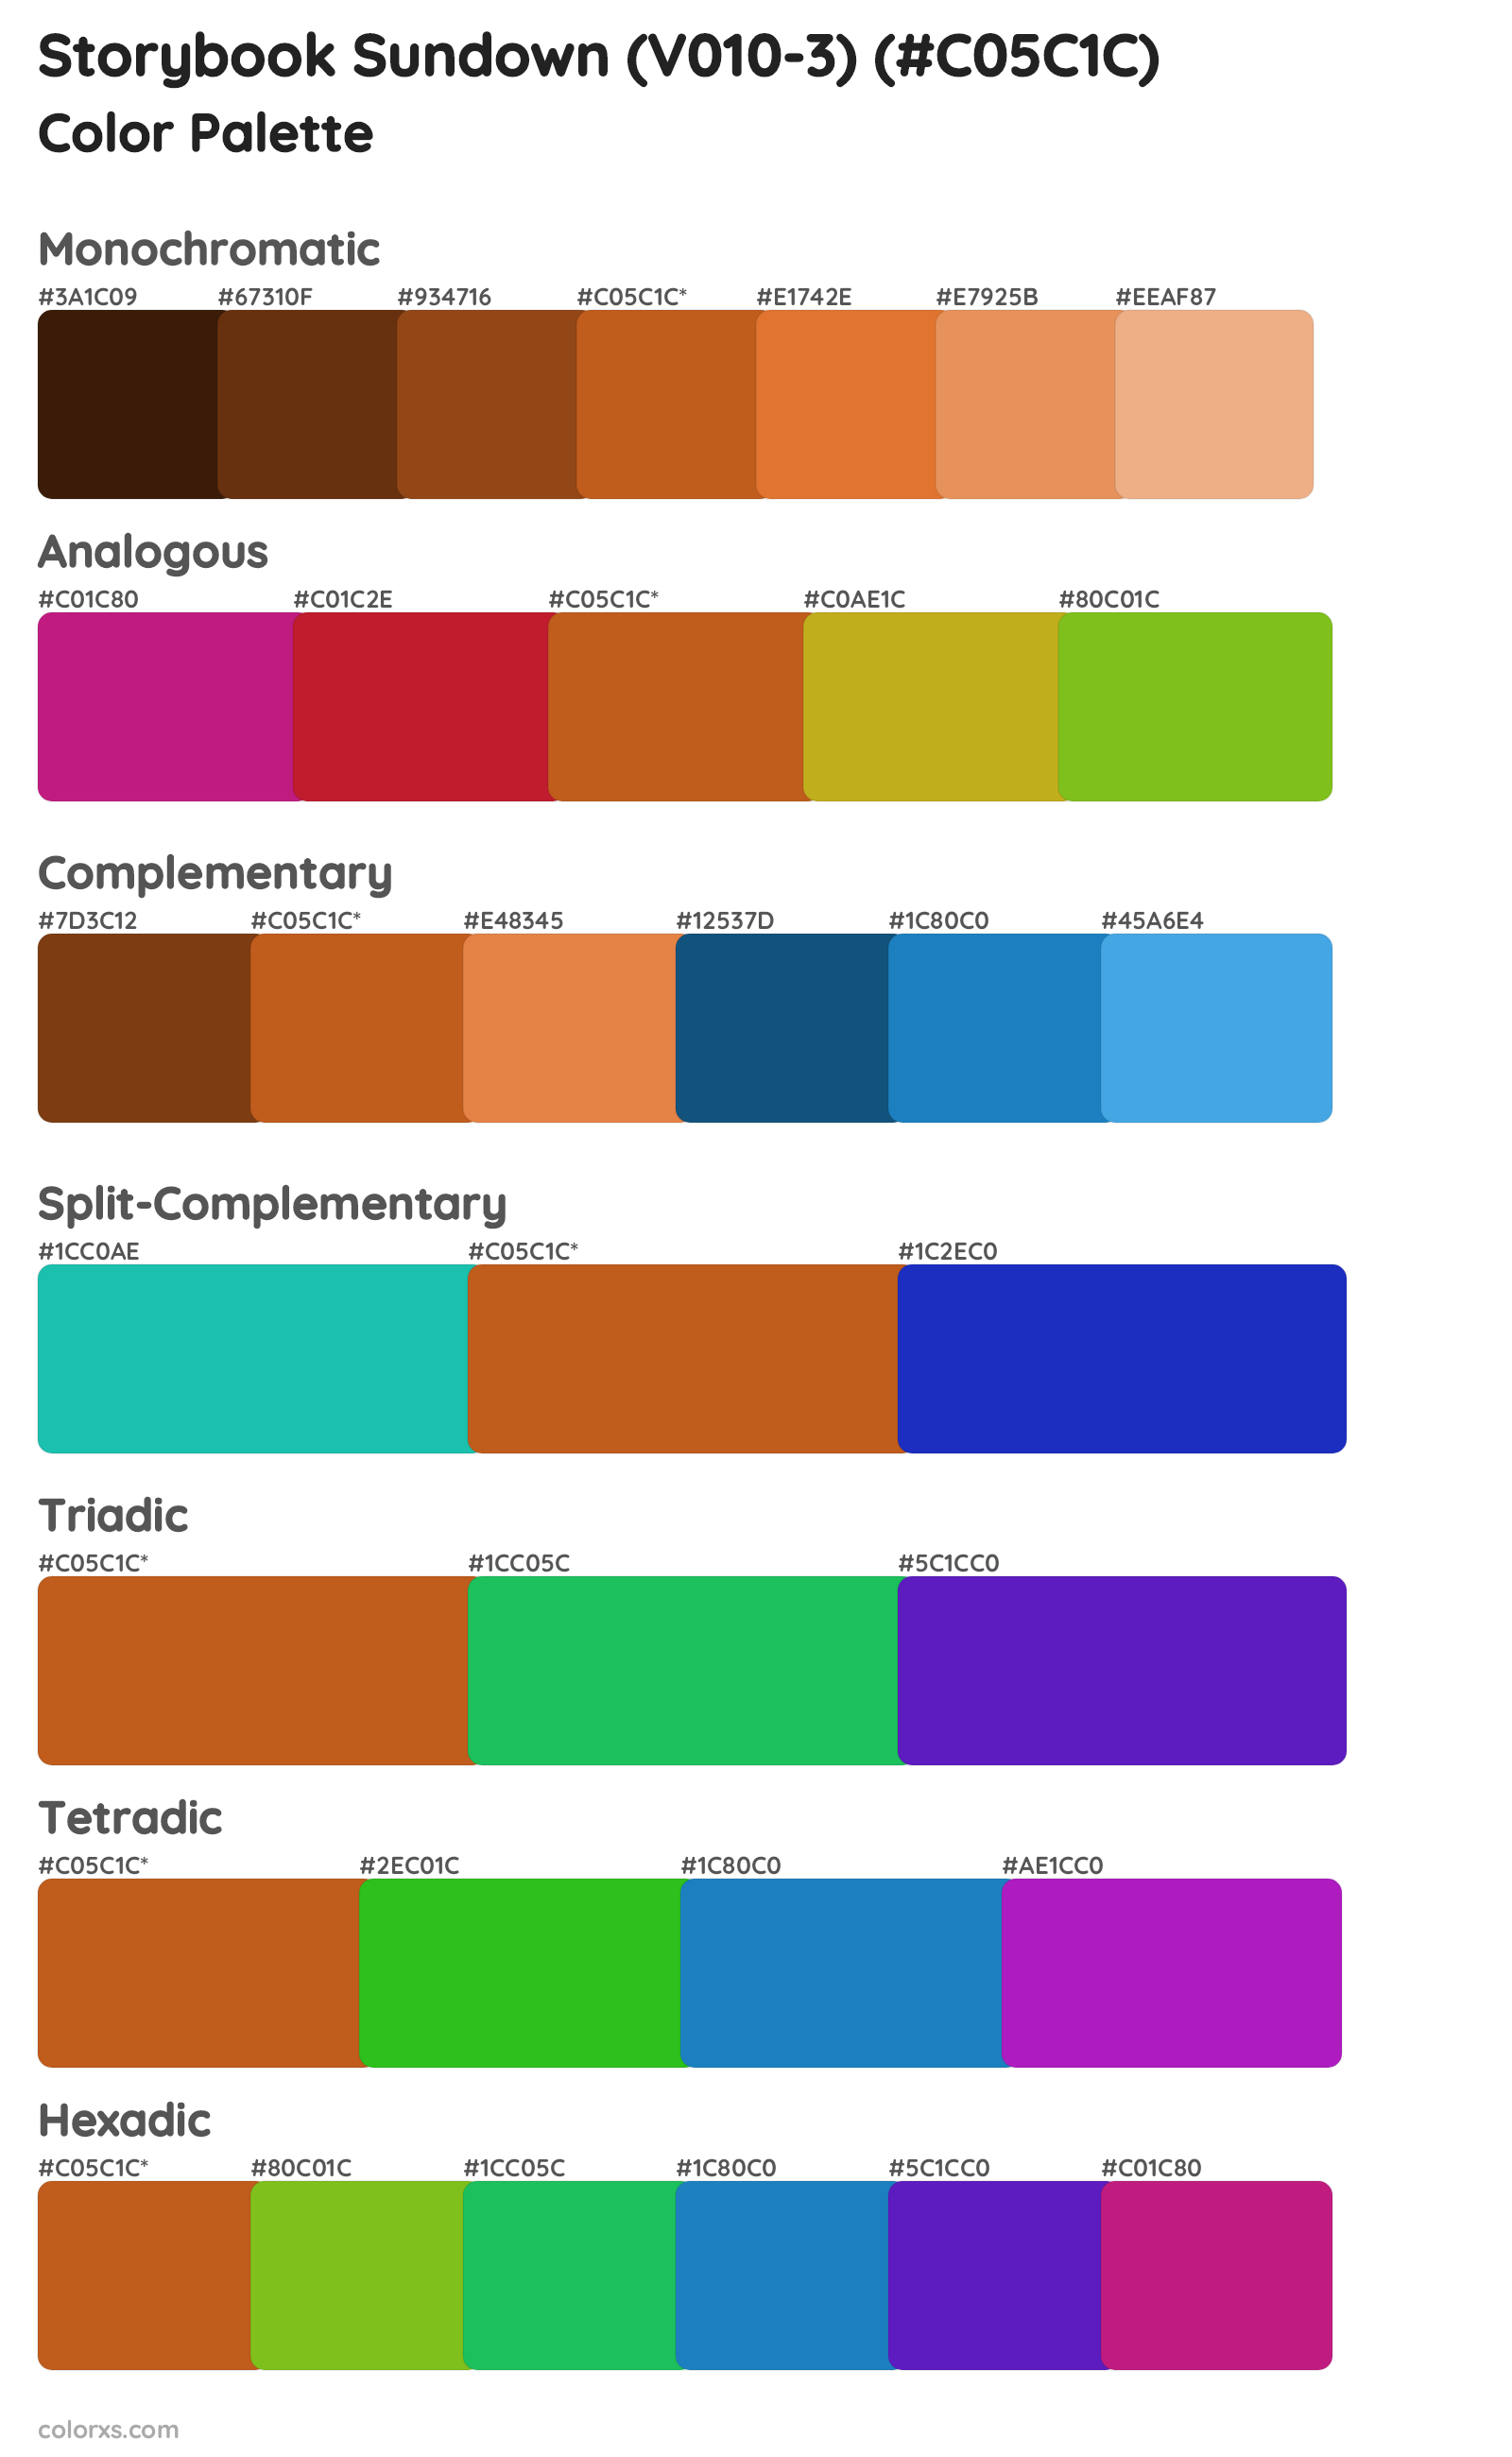 Storybook Sundown (V010-3) Color Scheme Palettes